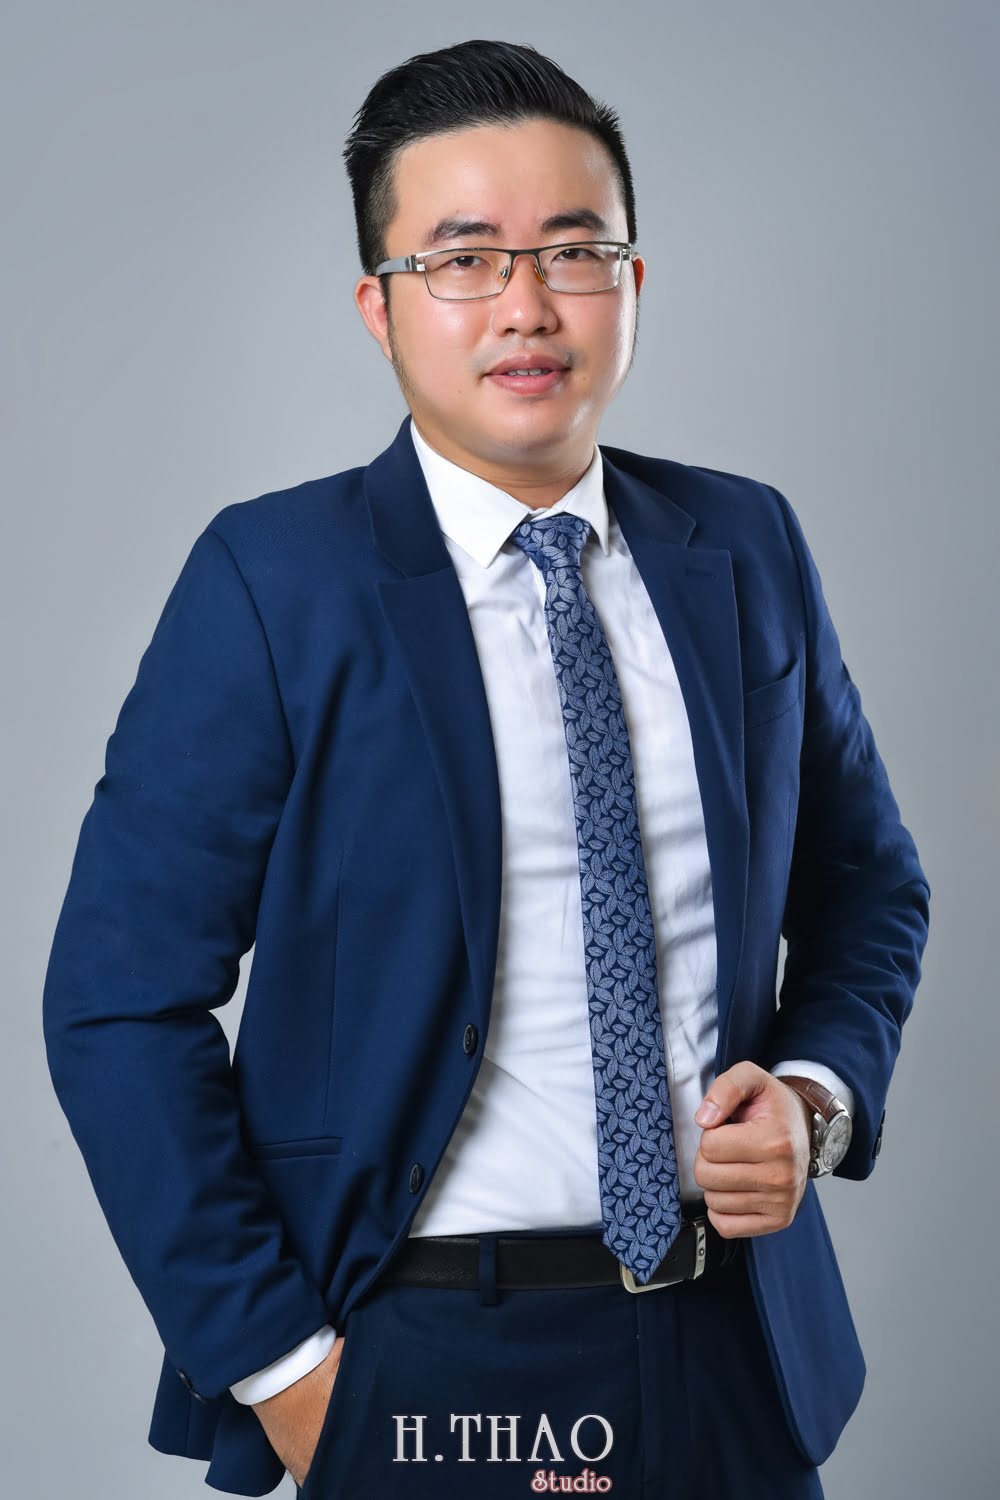 Anh profile cong ty 10 - Tổng hợp ảnh profile nghề nghiệp bác sĩ, ngân hàng đẹp- HThao Studio